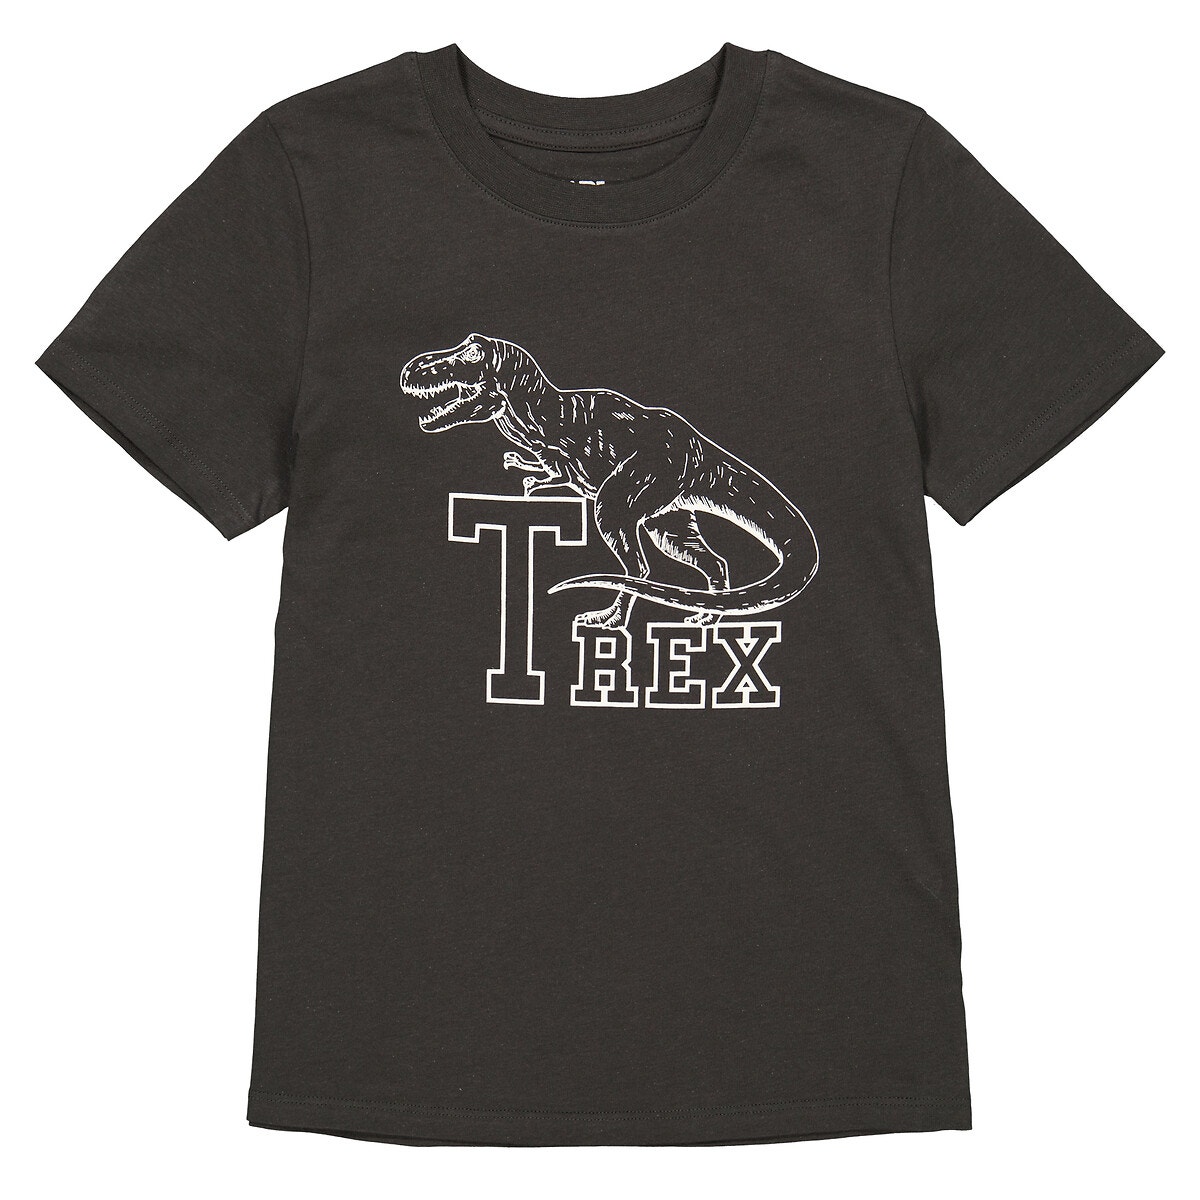 Μόδα > Παιδικά > Αγόρι > T-shirt, πόλο > Κοντά μανίκια Κοντομάνικο T-shirt με στάμπα T-Rex